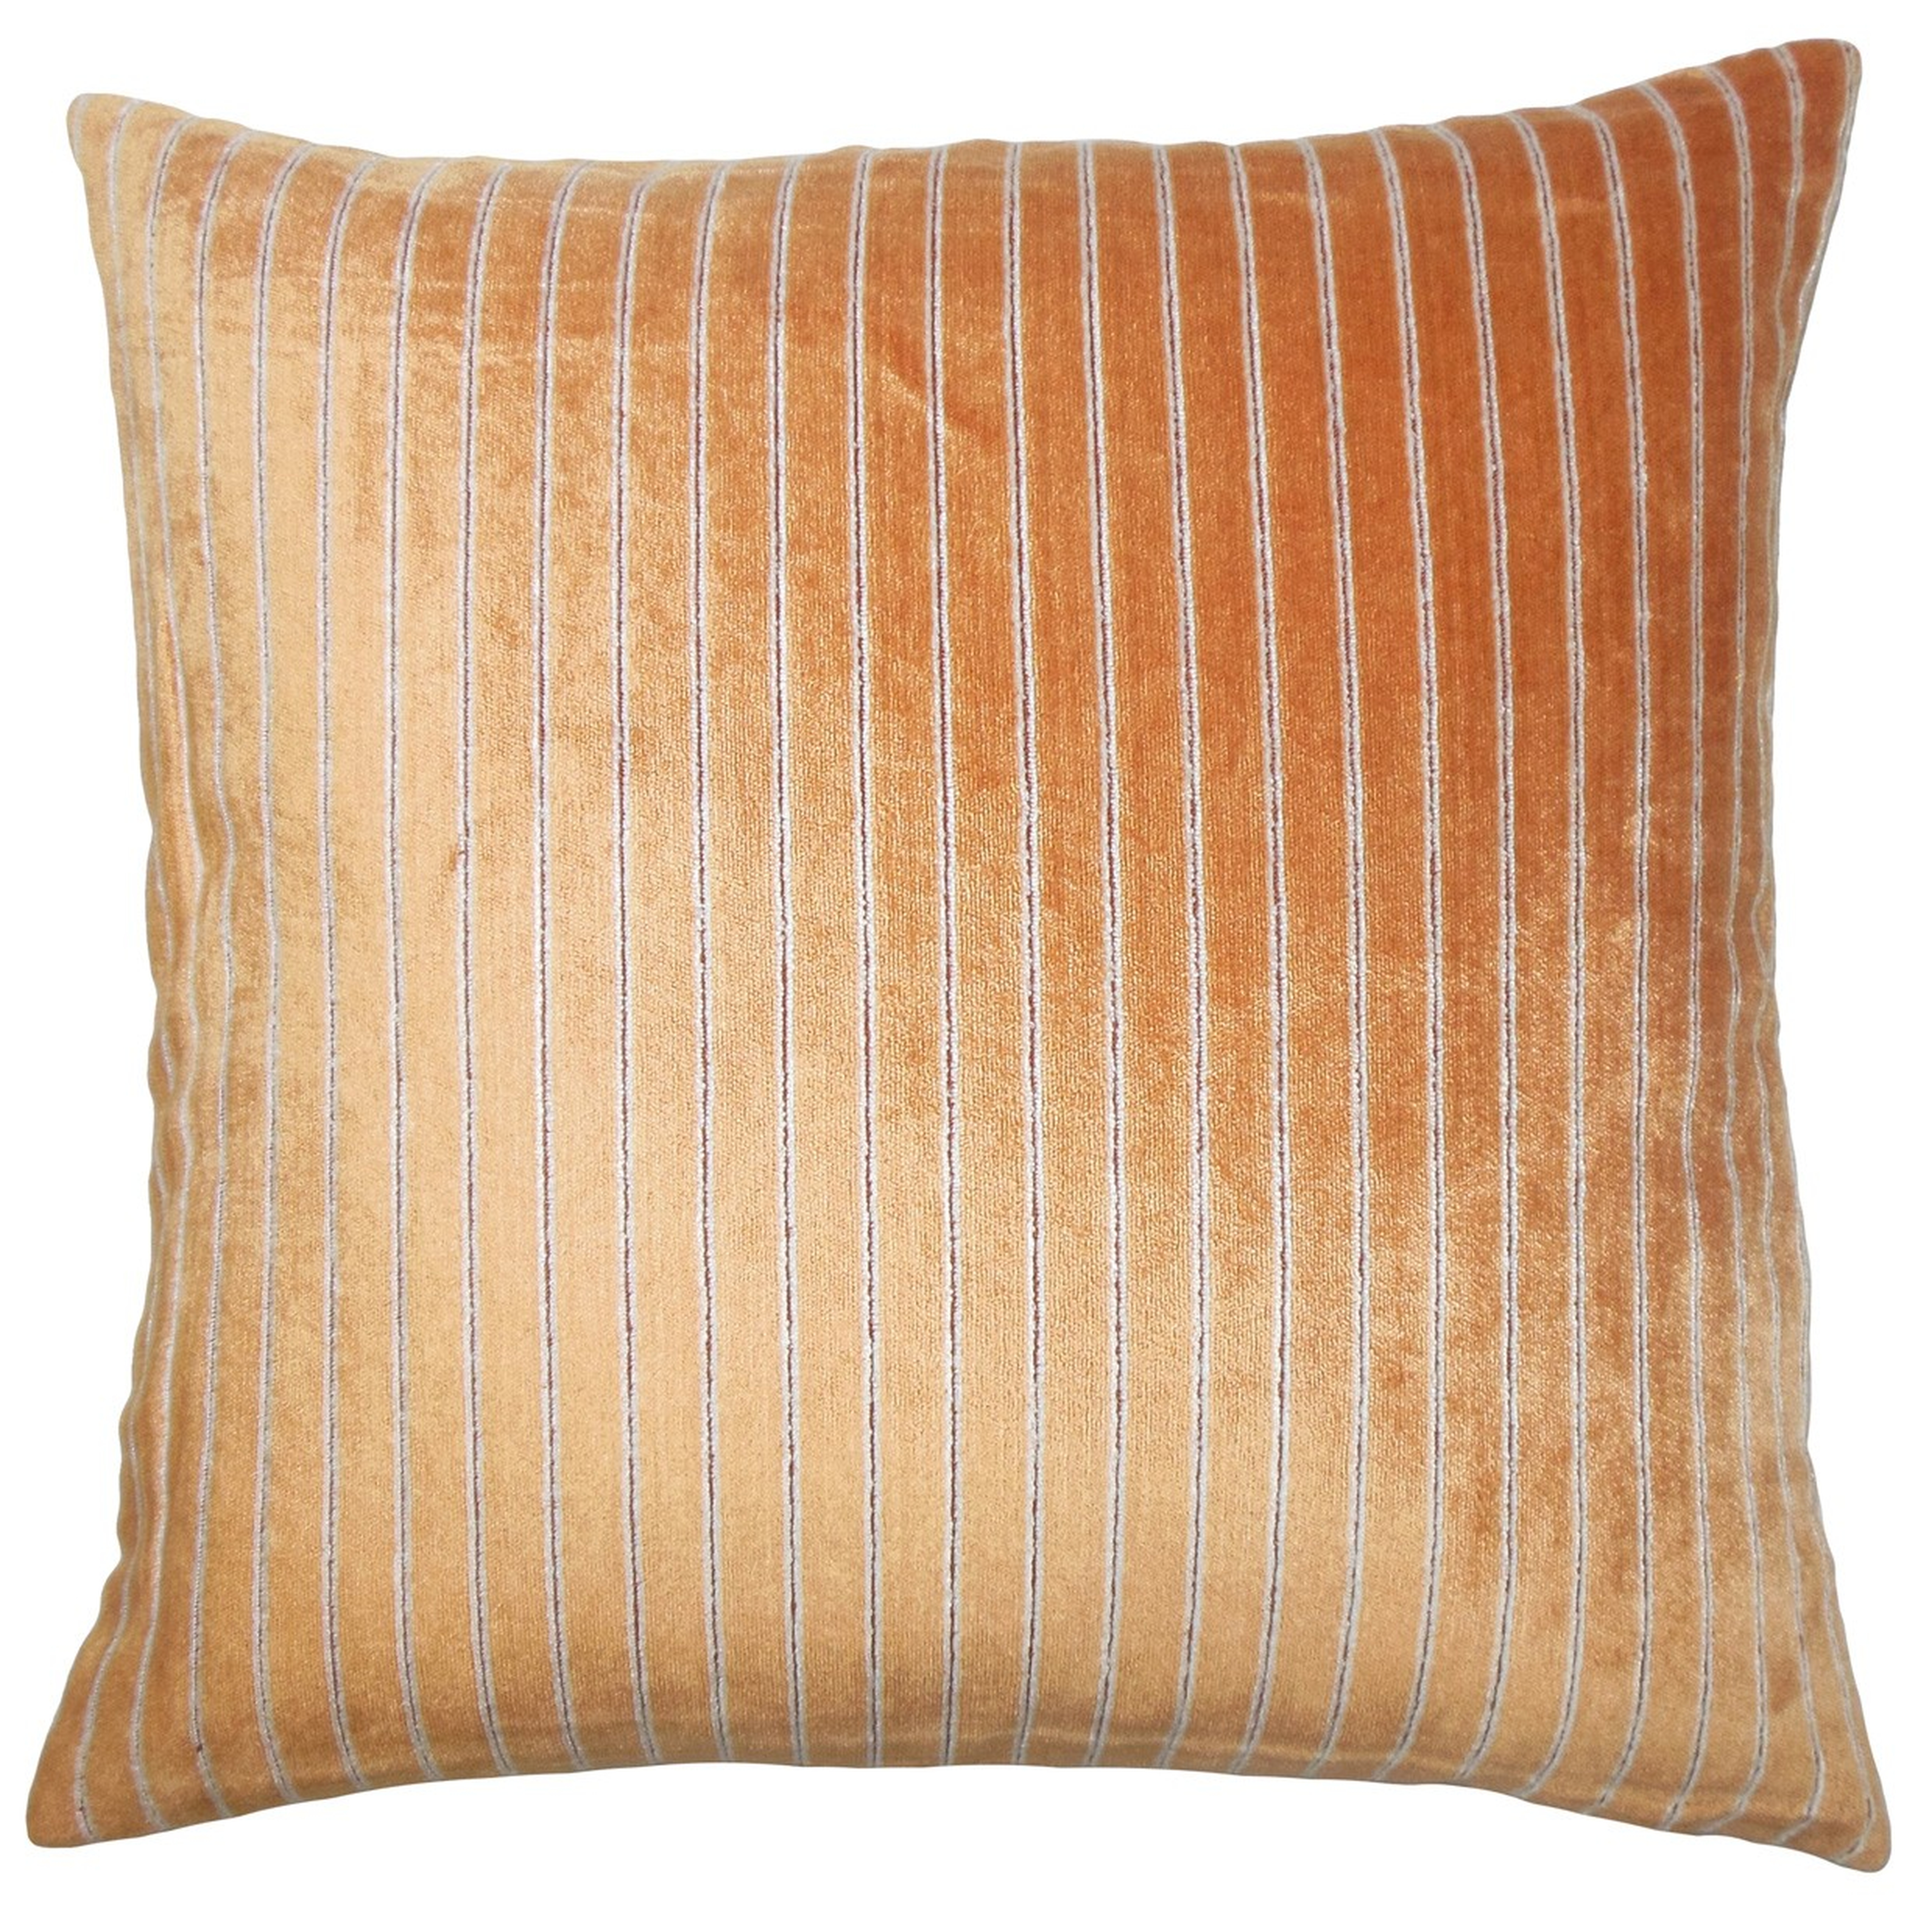 Maaike Striped Pillow Melon - 18" x 18" - Poly insert - Linen & Seam